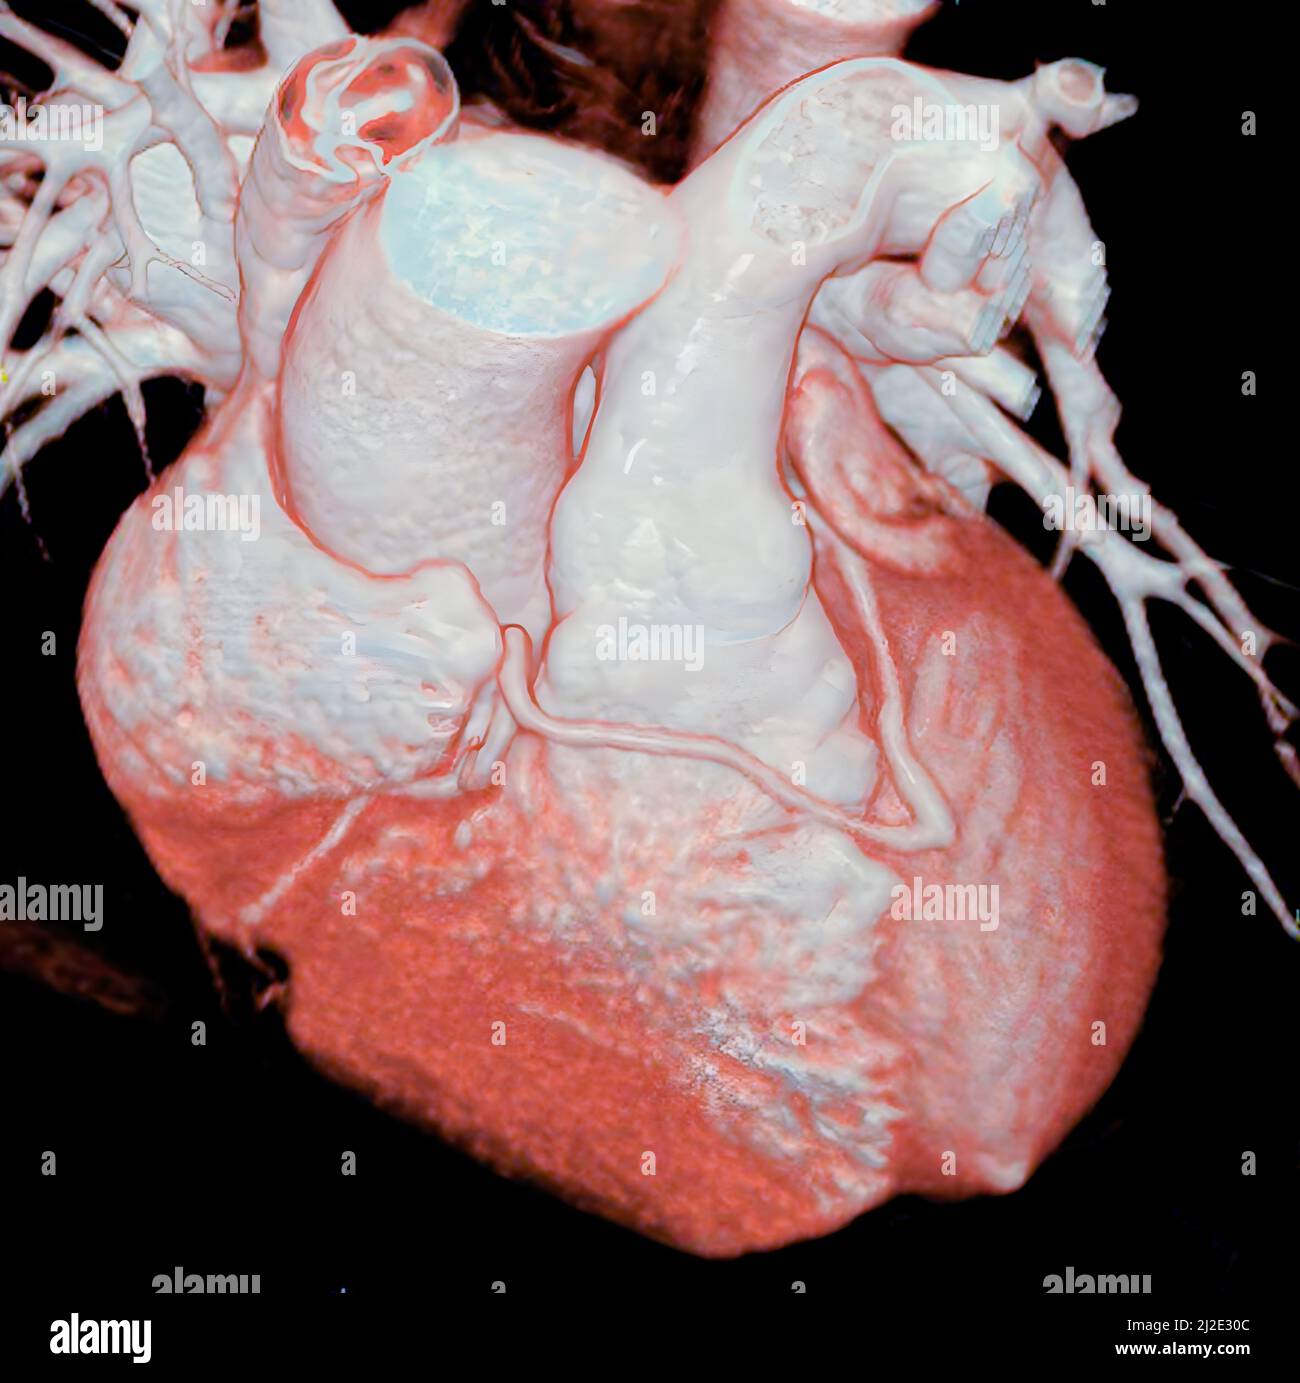 Congenital anomaly, coronary Stock Photo